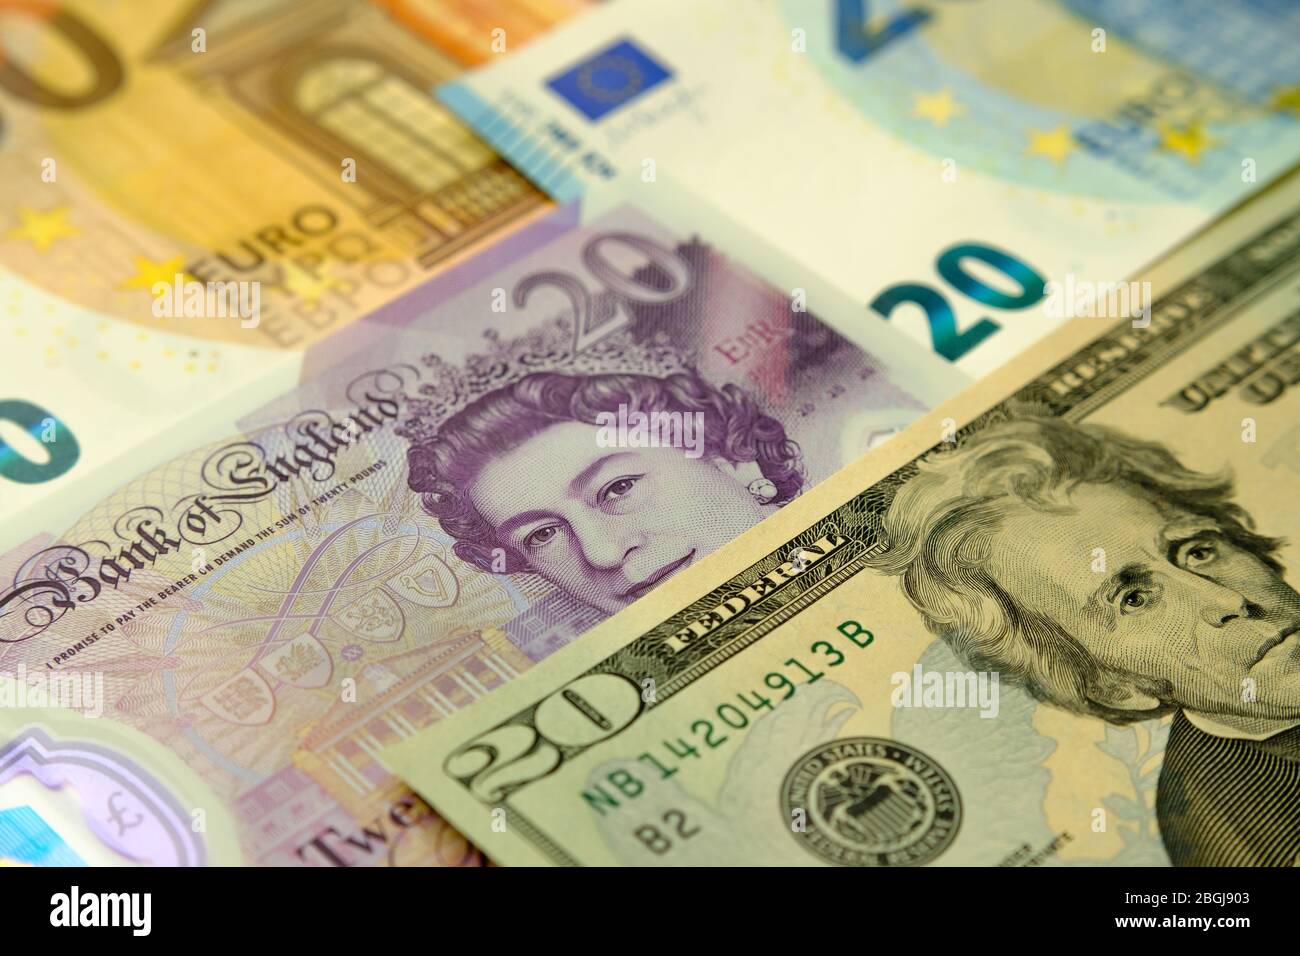 Pfund, Dollar und Euro übereinander gelegt. Finanzkonzept Foto für die Börse, Banken, internationalen Handel, Weltwirtschaft. Stockfoto